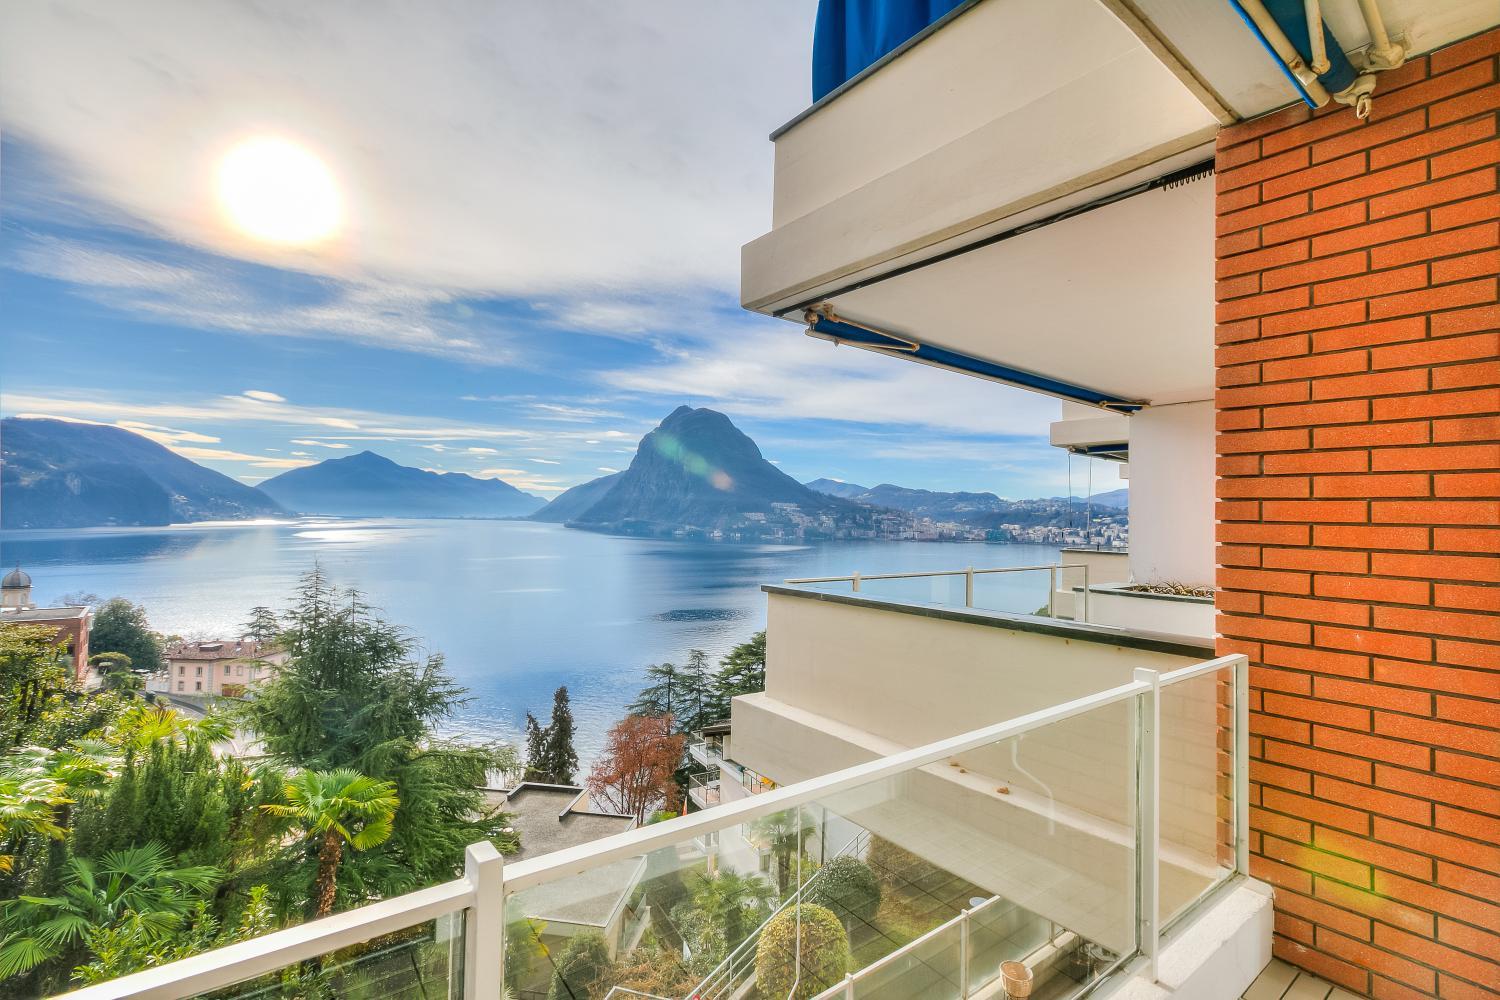 Honeymoon with Stunning View - Happy.Rentals, Lugano